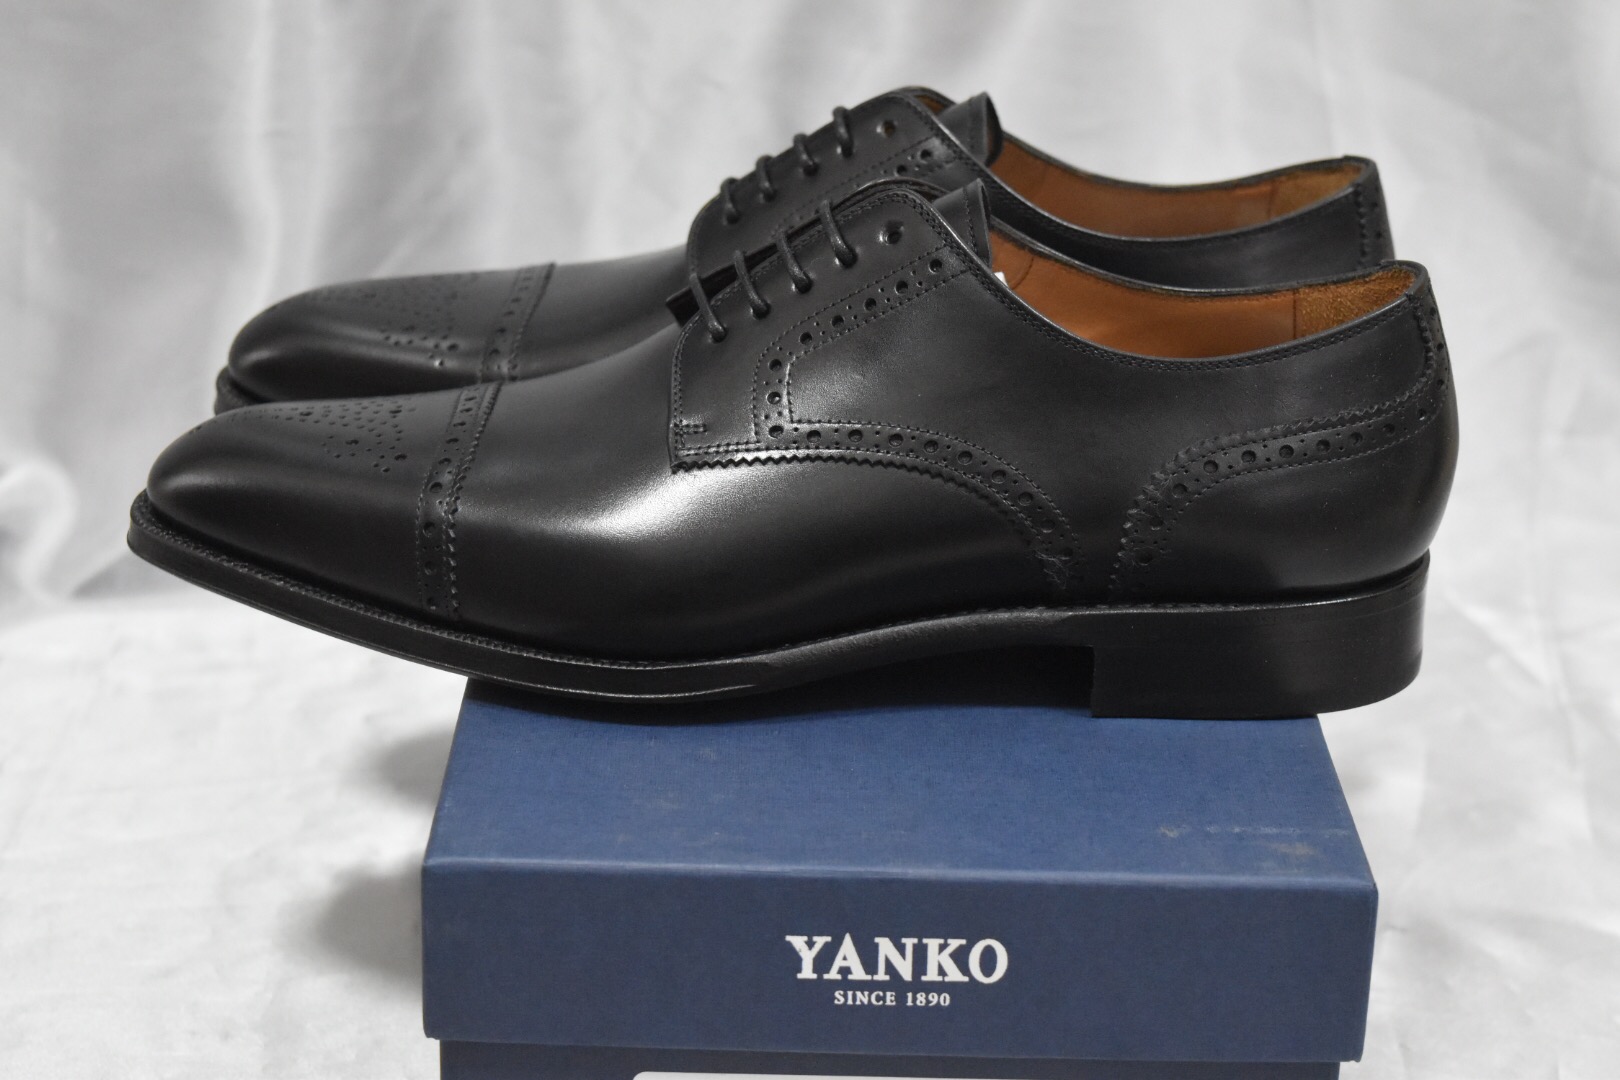 YANKO（ヤンコ）の靴を購入しました